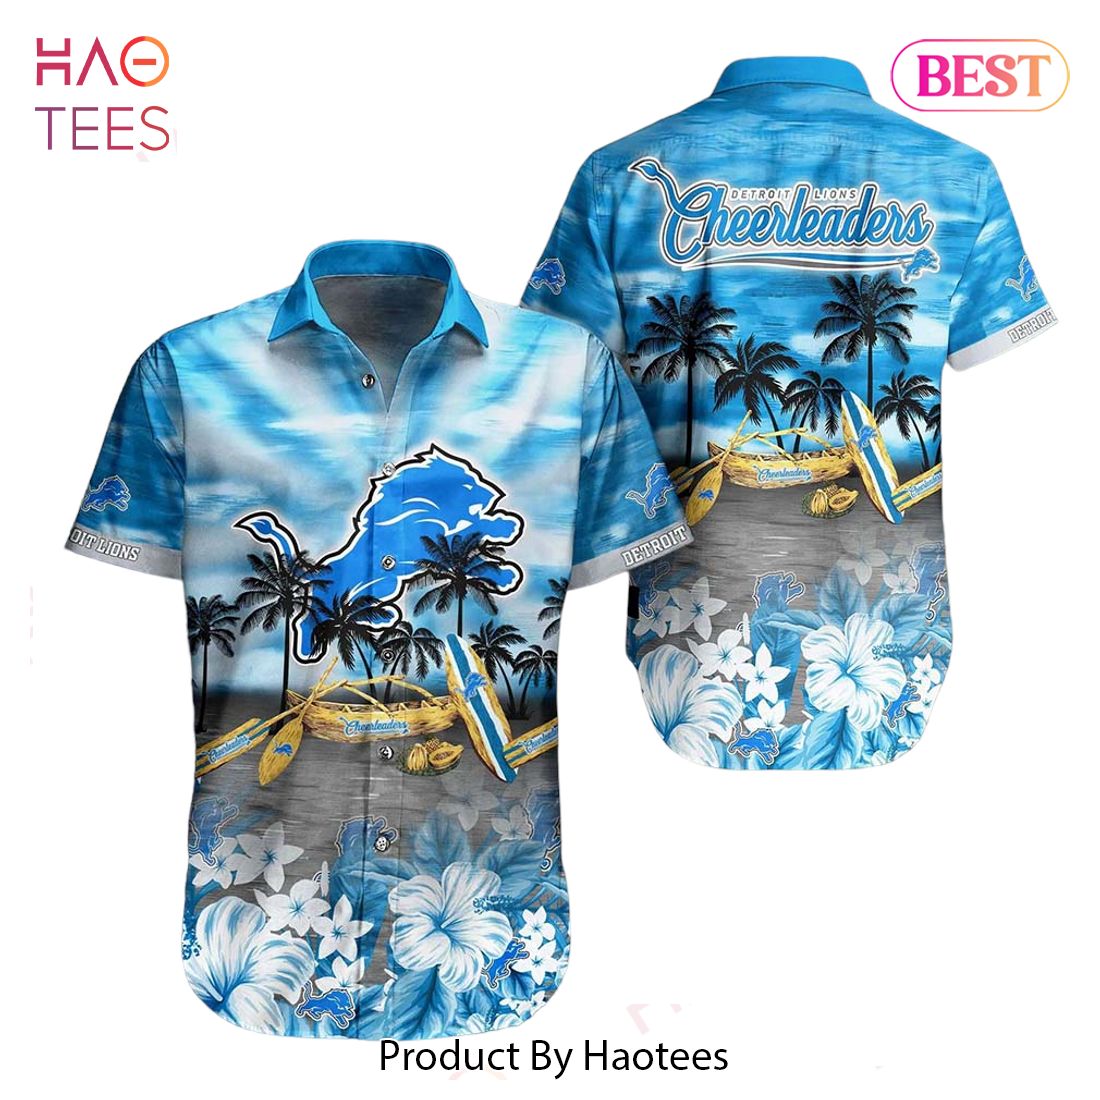 HOT TREND Detroit Lions NFL Hawaiian Shirt Tropical Pattern Summer For NFL Football Fans